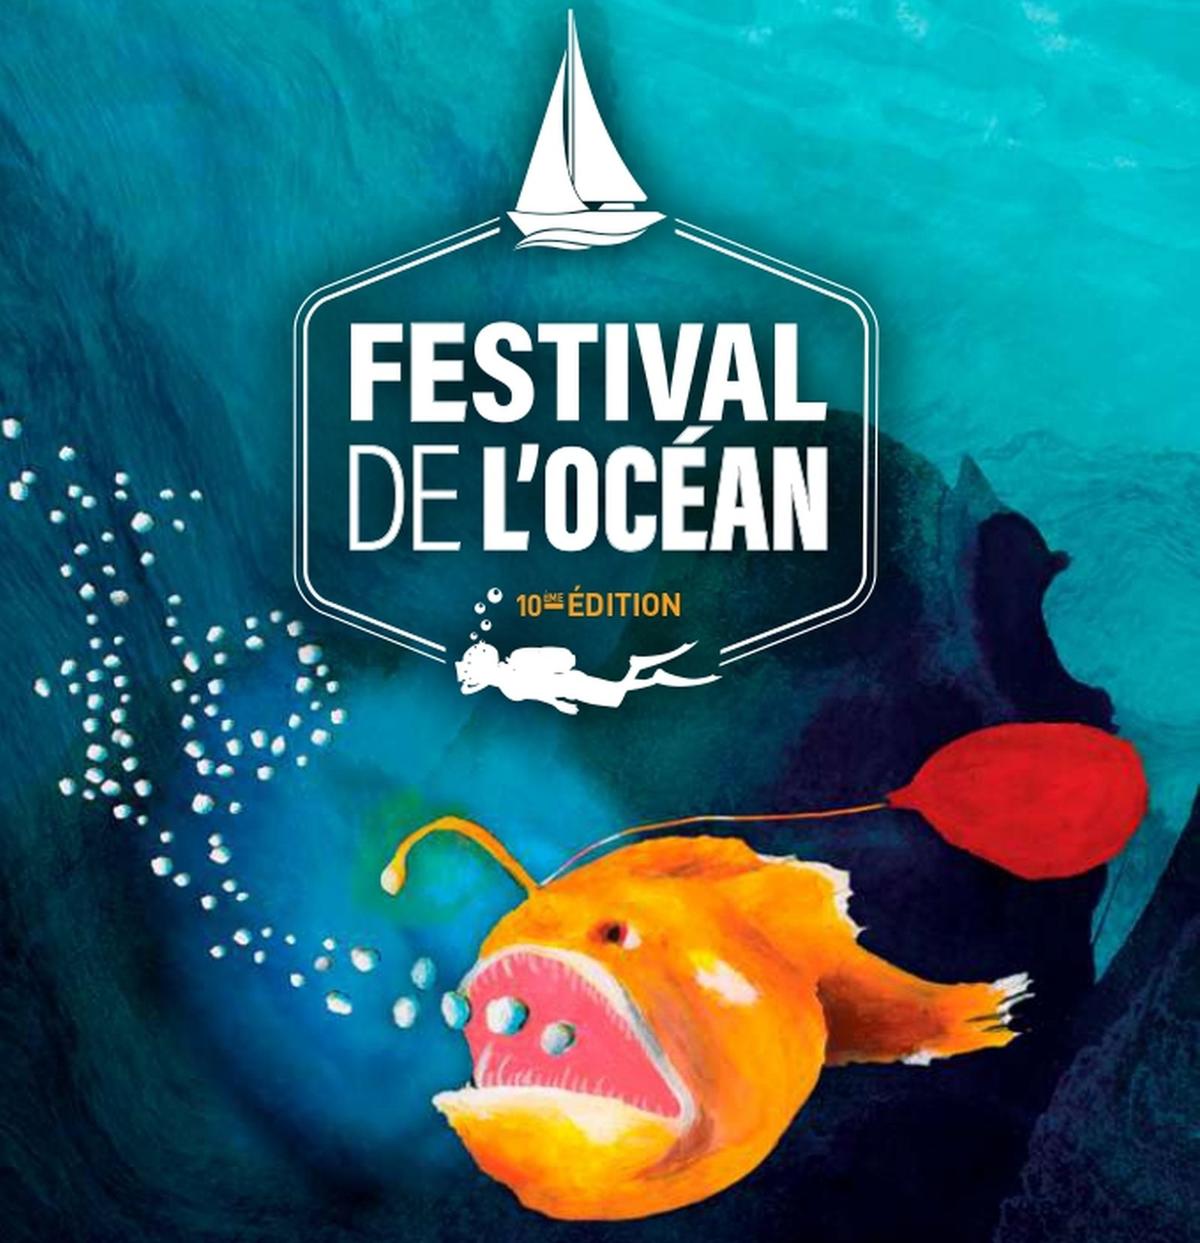 Festival de l'océan | La Réunion 